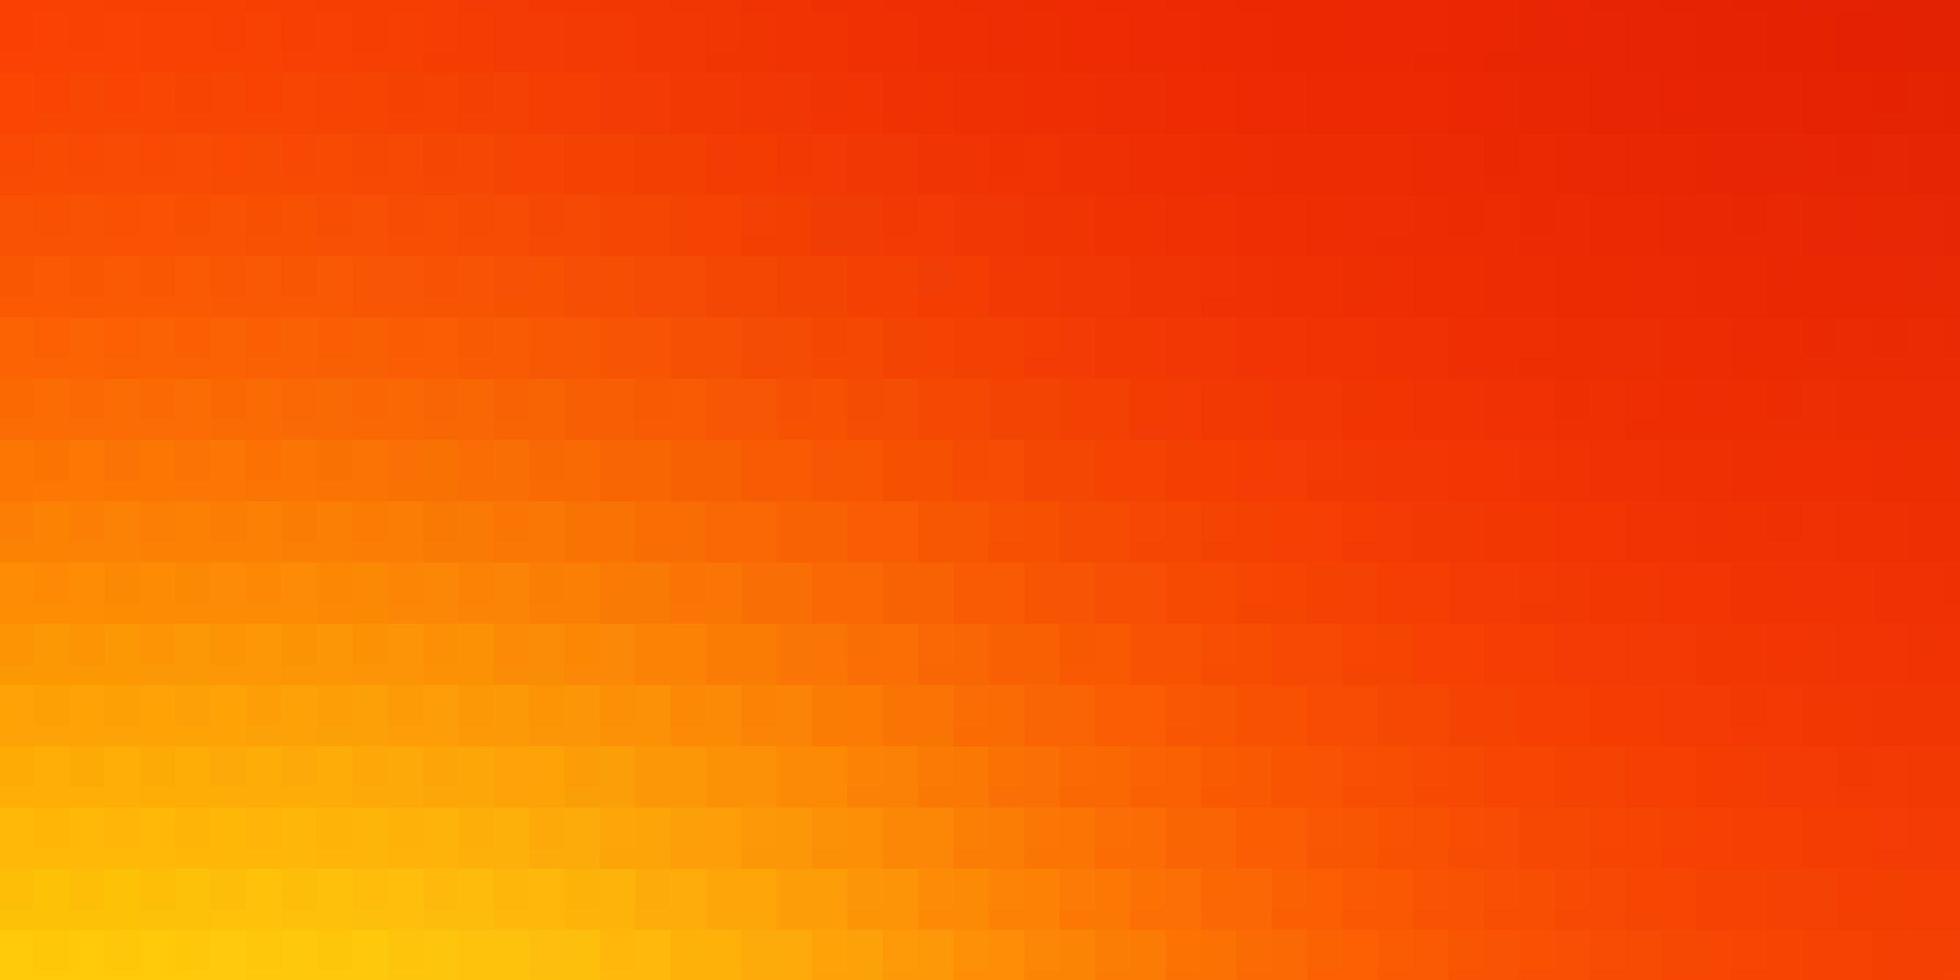 textura de vetor vermelho claro e amarelo em estilo retangular nova ilustração abstrata com formas retangulares melhor design para seu banner de pôster de anúncio